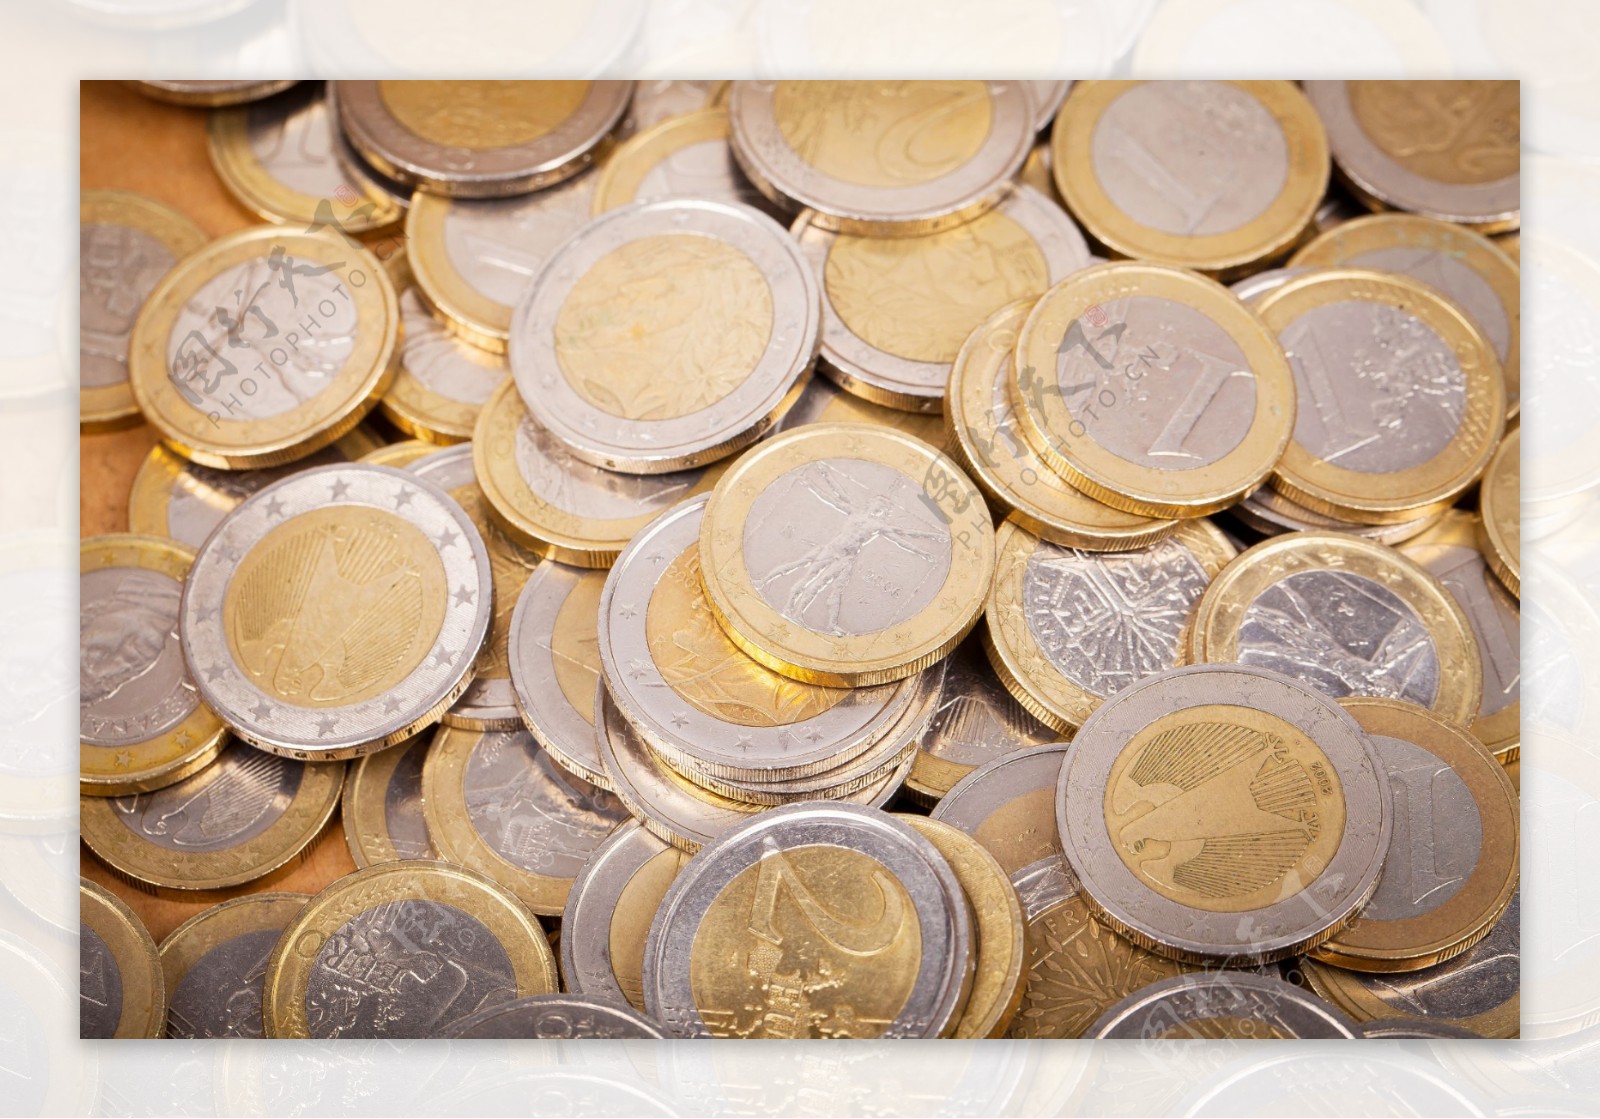 欧元硬币摄影图片